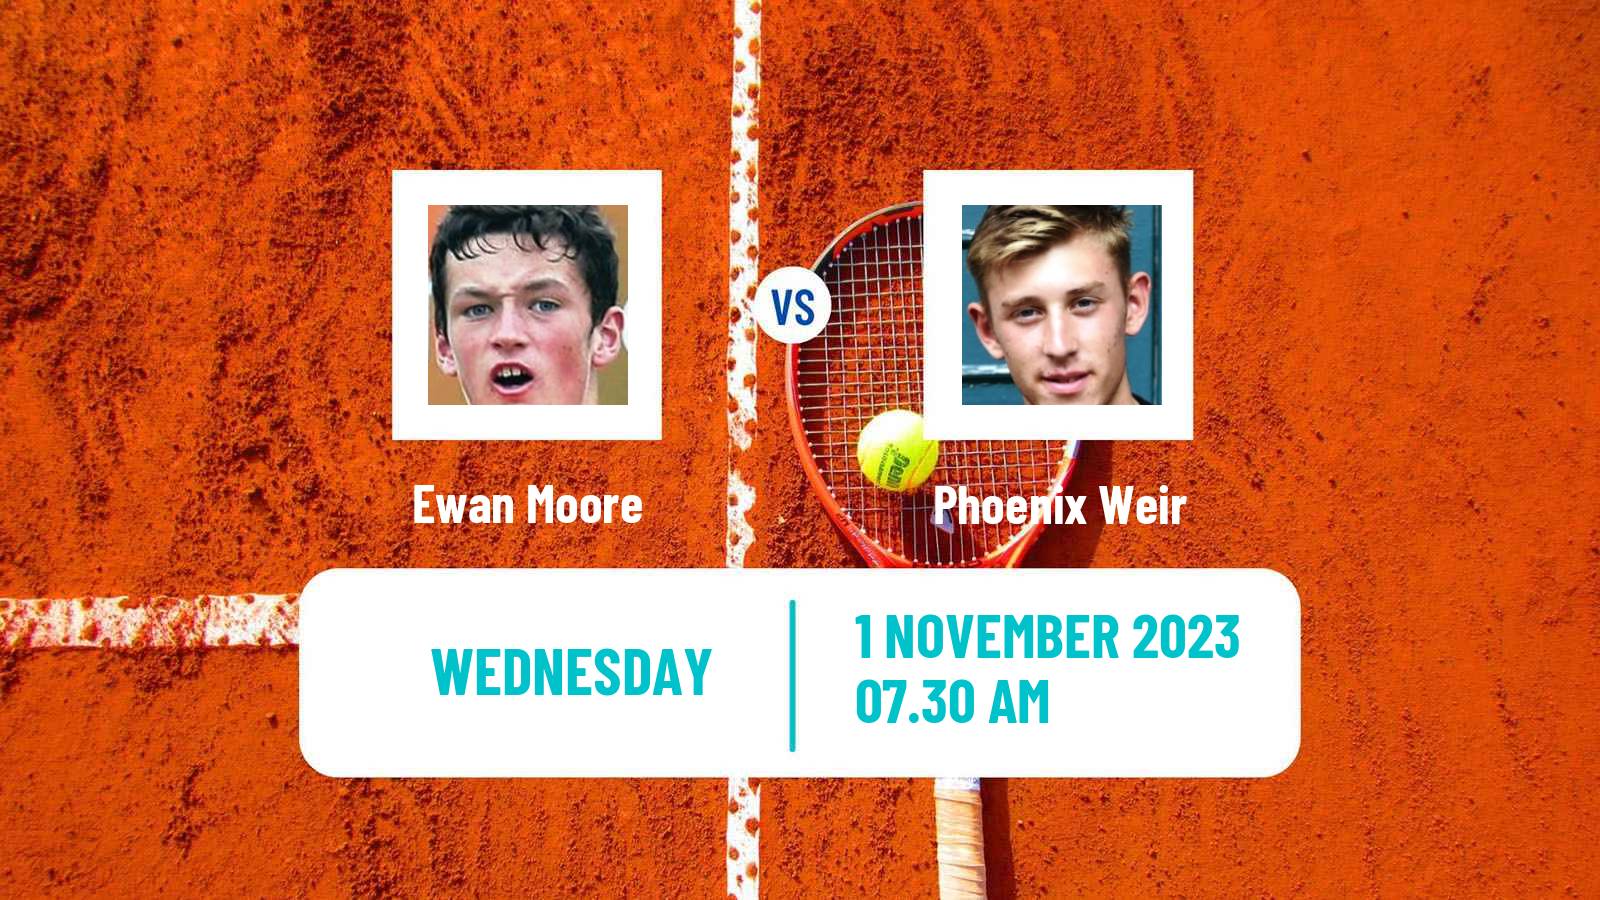 Tennis ITF M25 Sunderland 2 Men Ewan Moore - Phoenix Weir